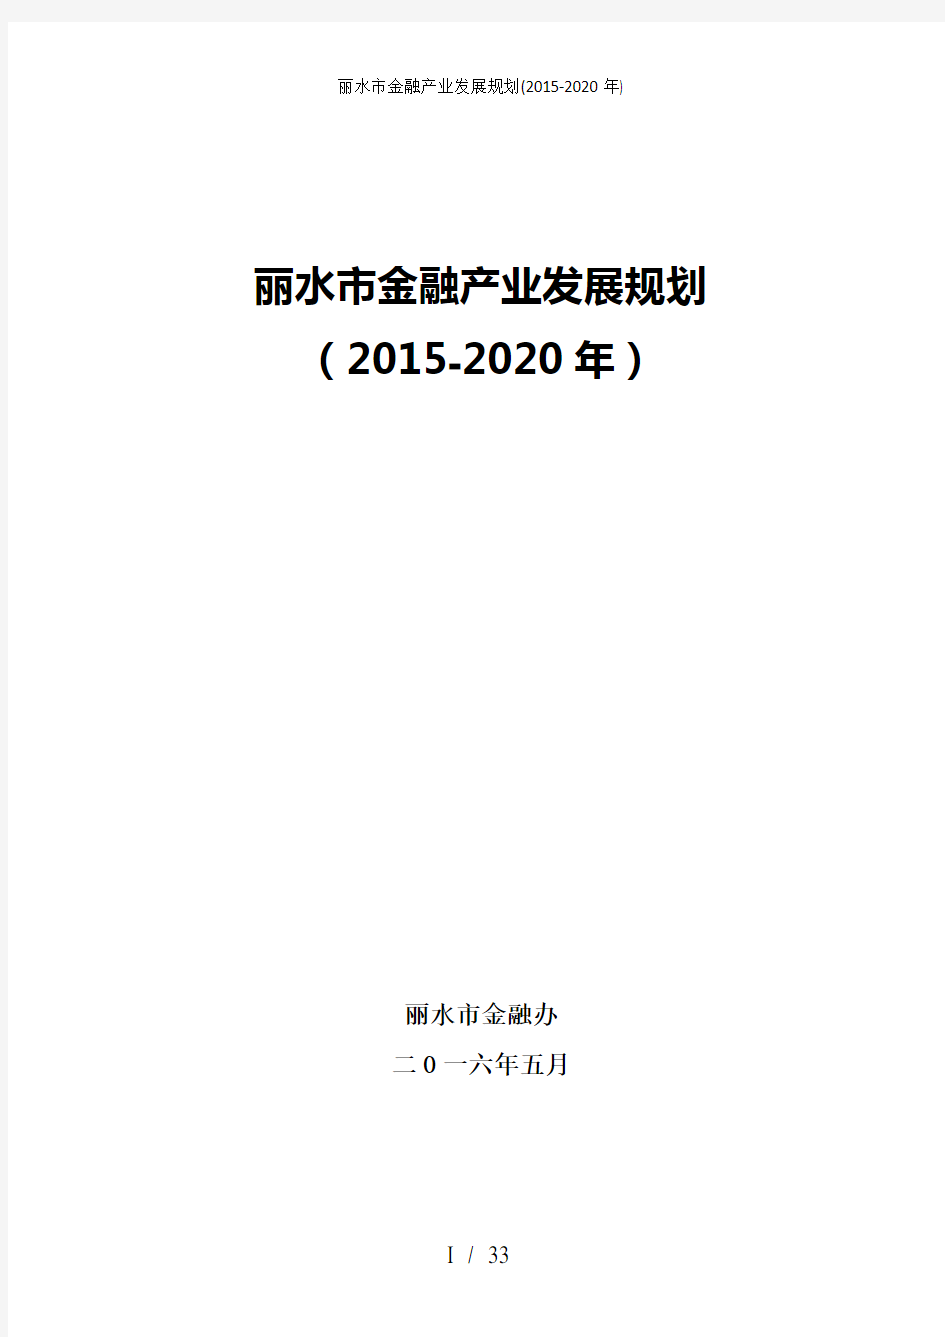 丽水市金融产业发展规划(2015-2020年)